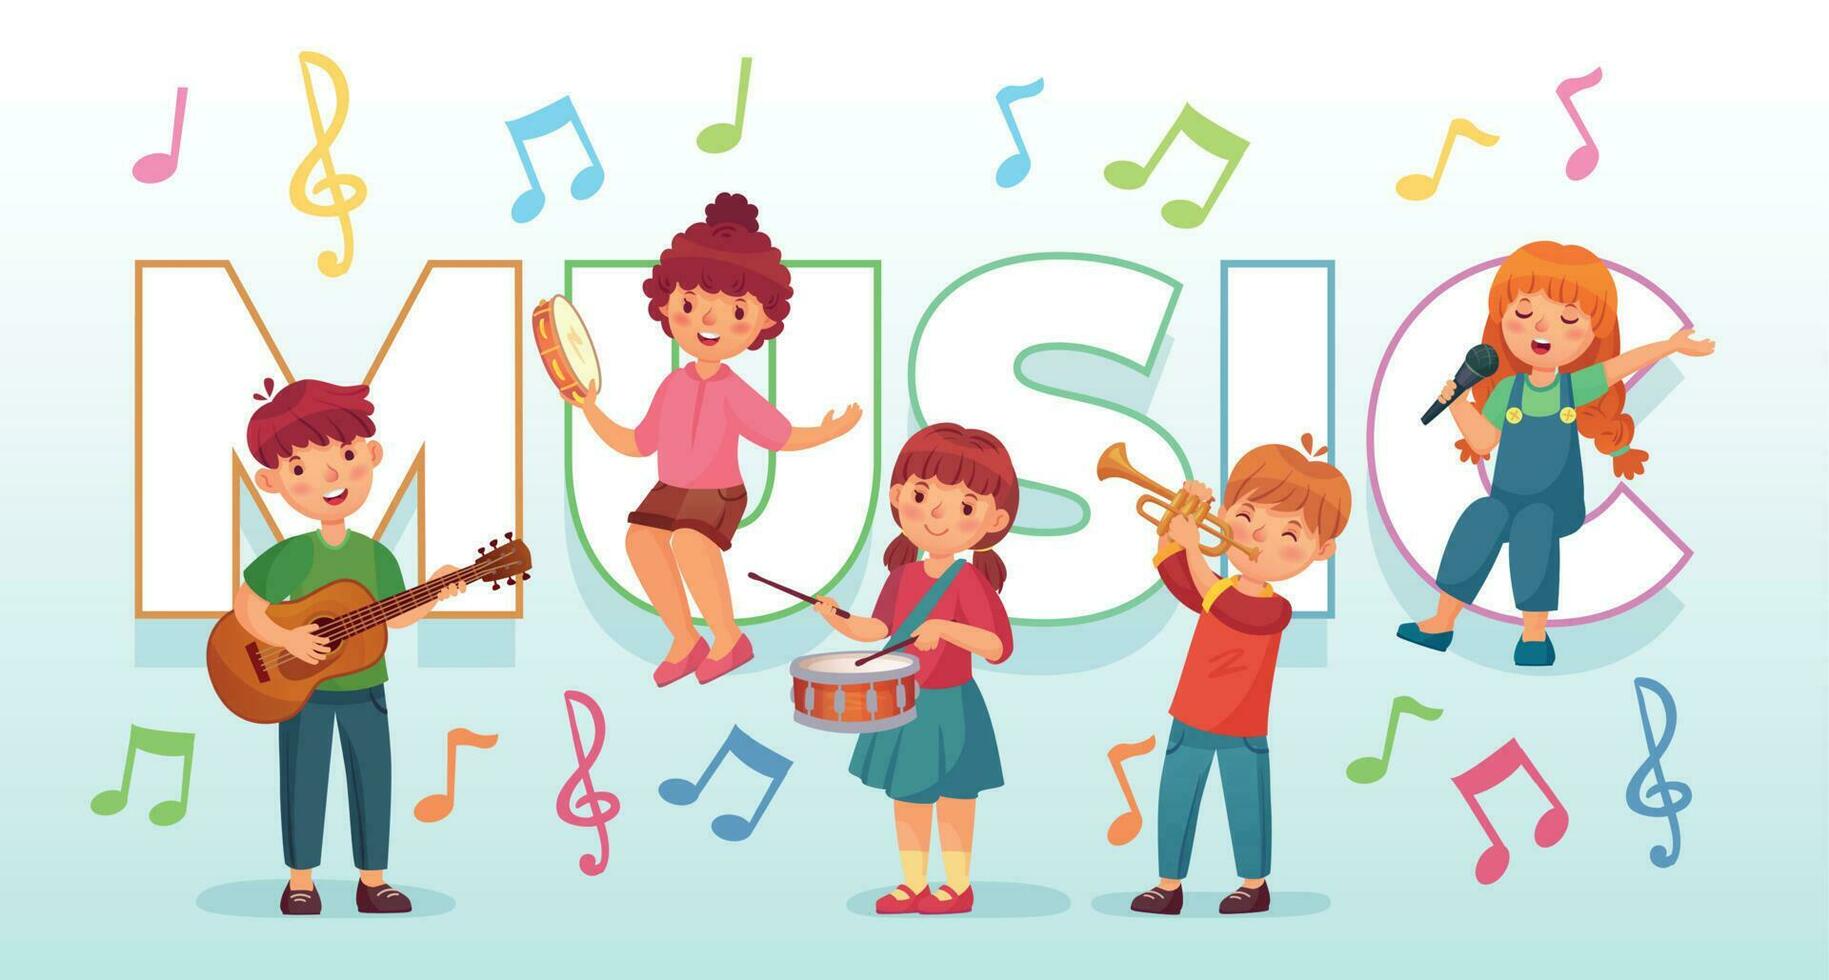 bambini giocando musica. bambini musicale strumenti, bambino gruppo musicale musicisti e danza ragazzo cantando o giocando chitarra vettore illustrazione